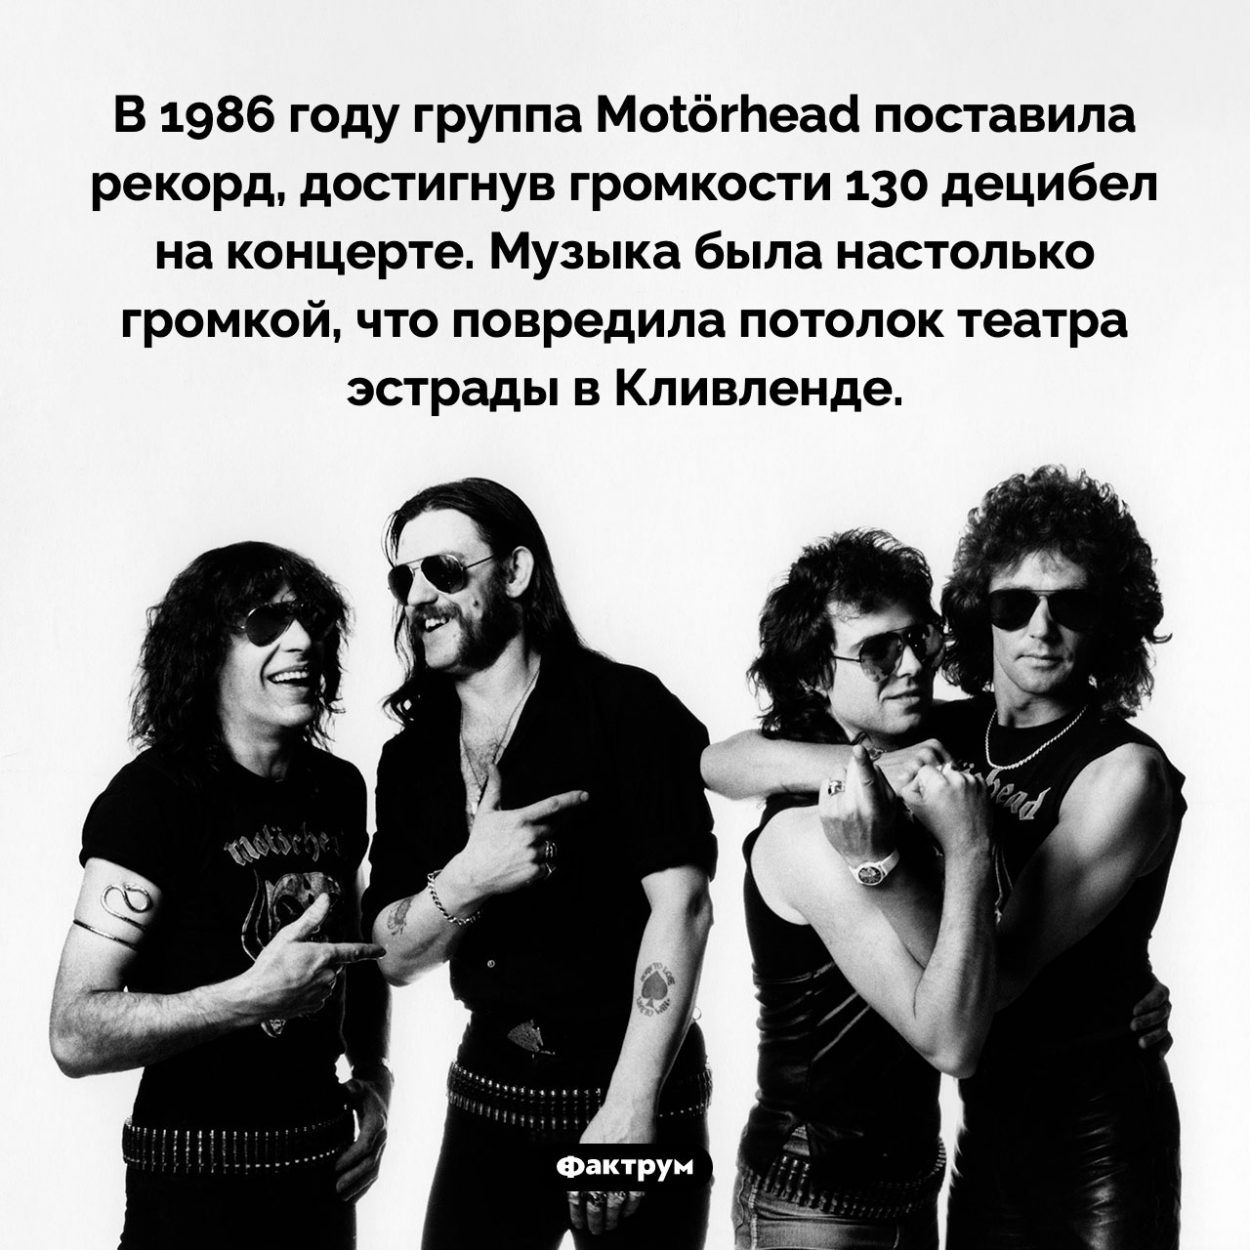 Рекорд Motörhead. В 1986 году группа Motörhead поставила рекорд, достигнув громкости 130 децибел на концерте. Музыка была настолько громкой, что повредила потолок театра эстрады в Кливленде.